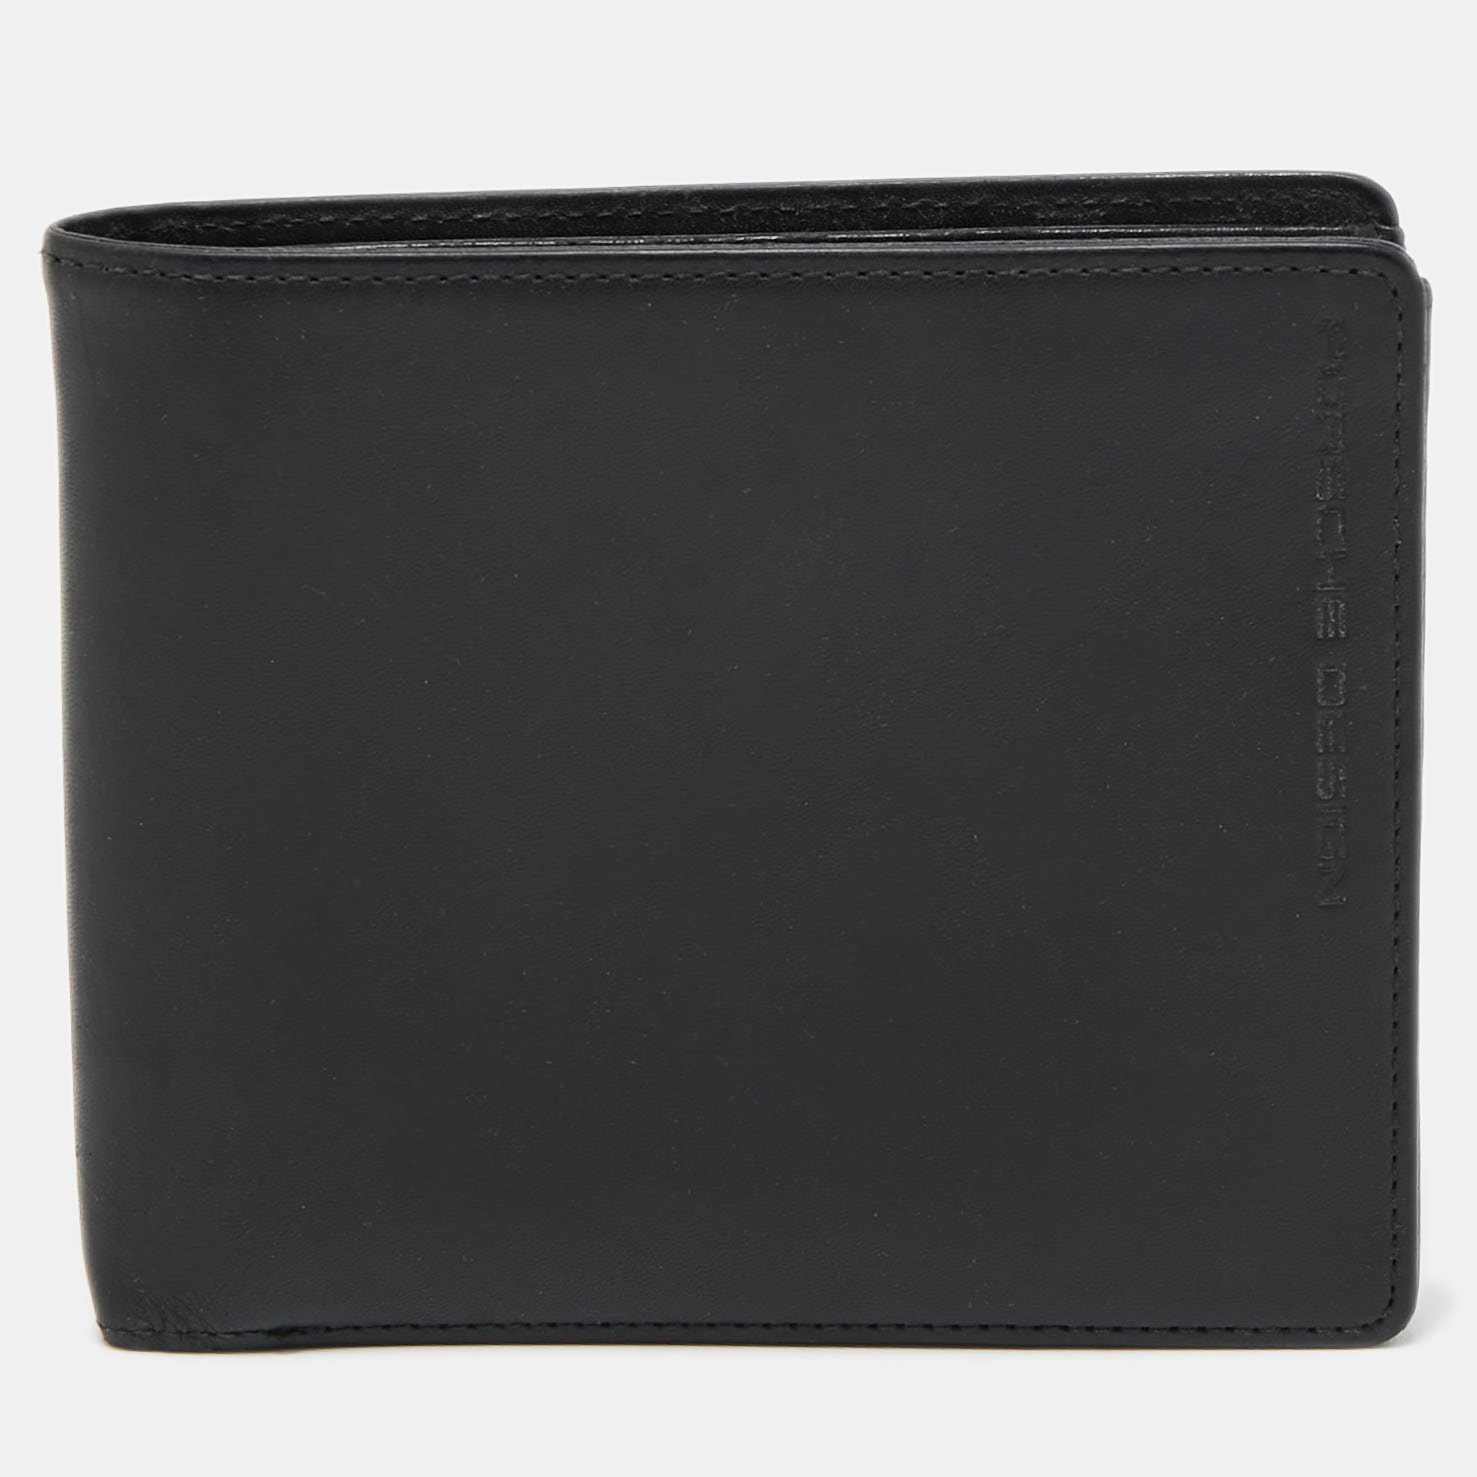 porsche design black leather p3300 bifold wallet